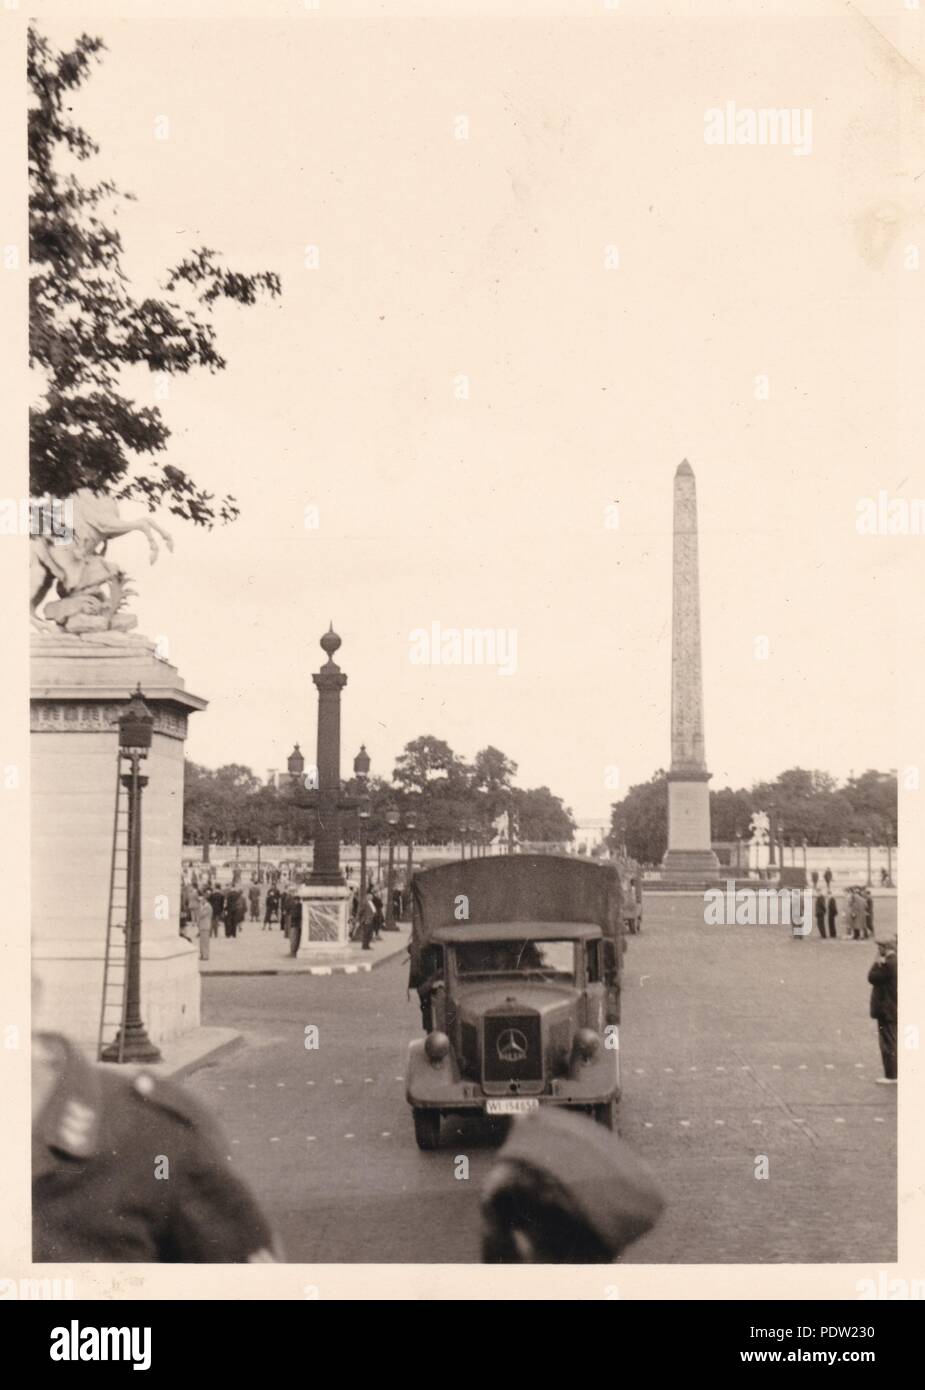 Bild aus dem Fotoalbum von Oberfeldwebel Karl gendner von 1. Staffel, Kampfgeschwader 40:Luftwaffe Trucks vorbei an der Obelisk von Luxor auf dem Place de la Concorde in Paris besetzten, Juli 1940. Gendner war ein Pilot mit 3./KGzbV 1 zu dieser Zeit. Stockfoto